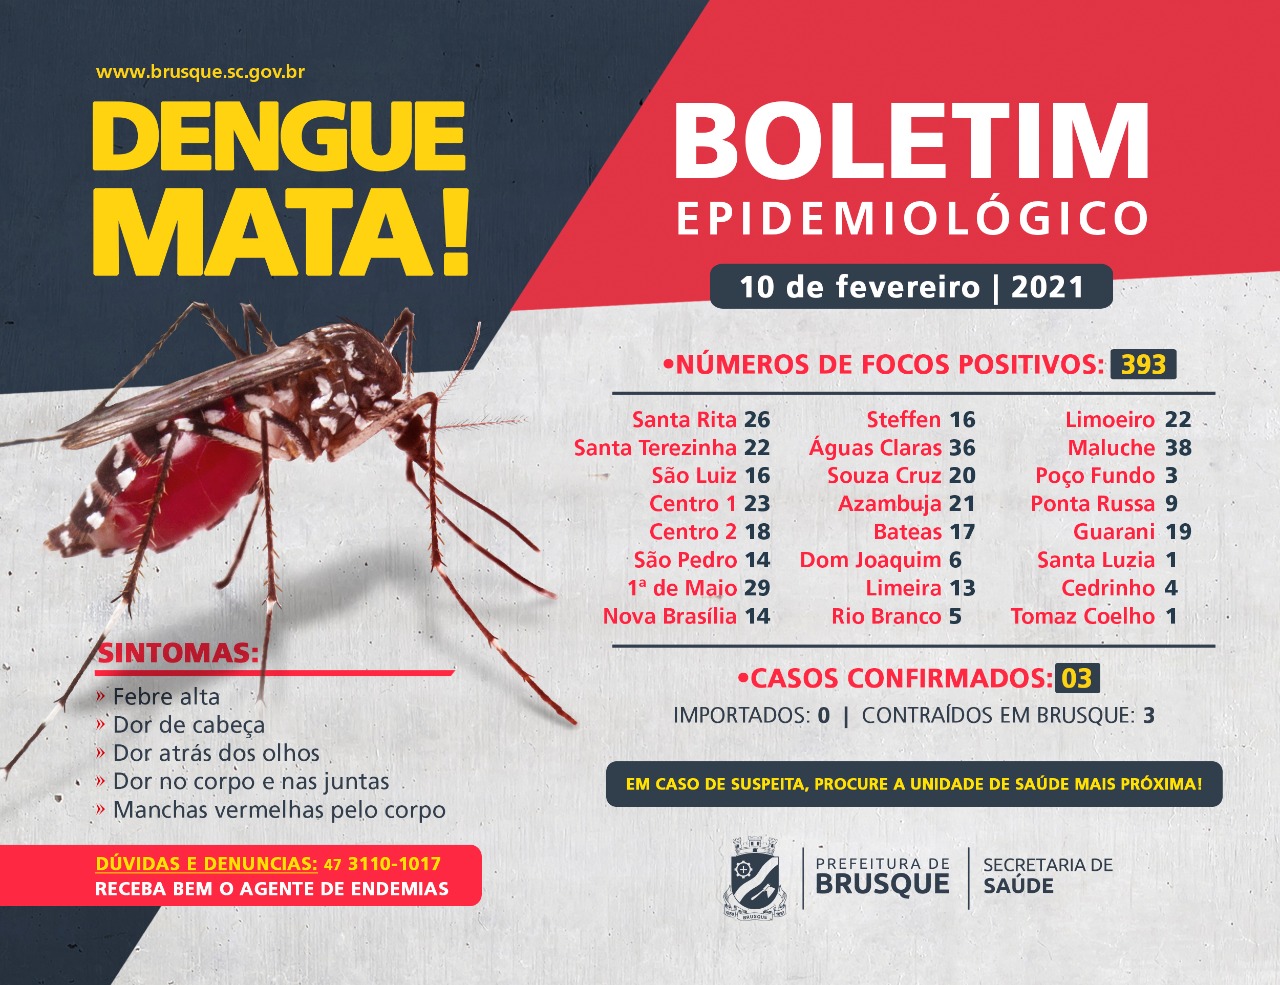 Confira o boletim epidemiológico da dengue desta quarta-feira (10)